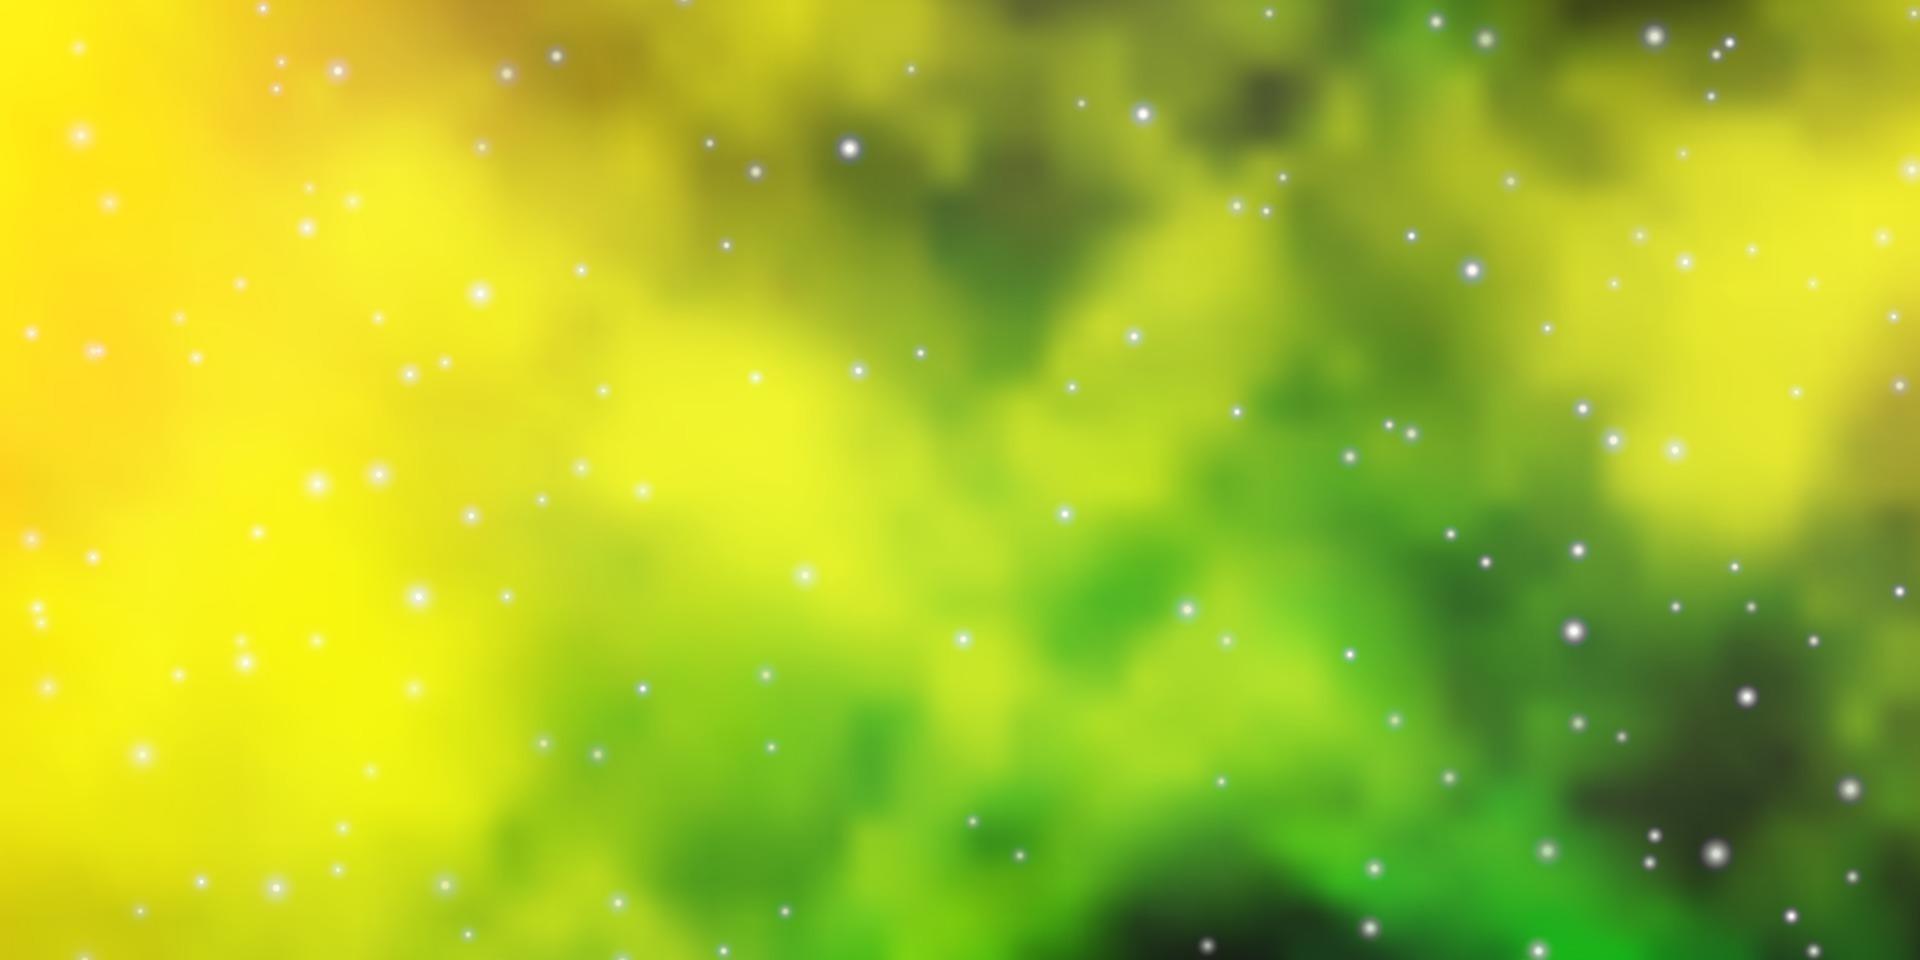 ljusgrön, gul vektorlayout med ljusa stjärnor. vektor